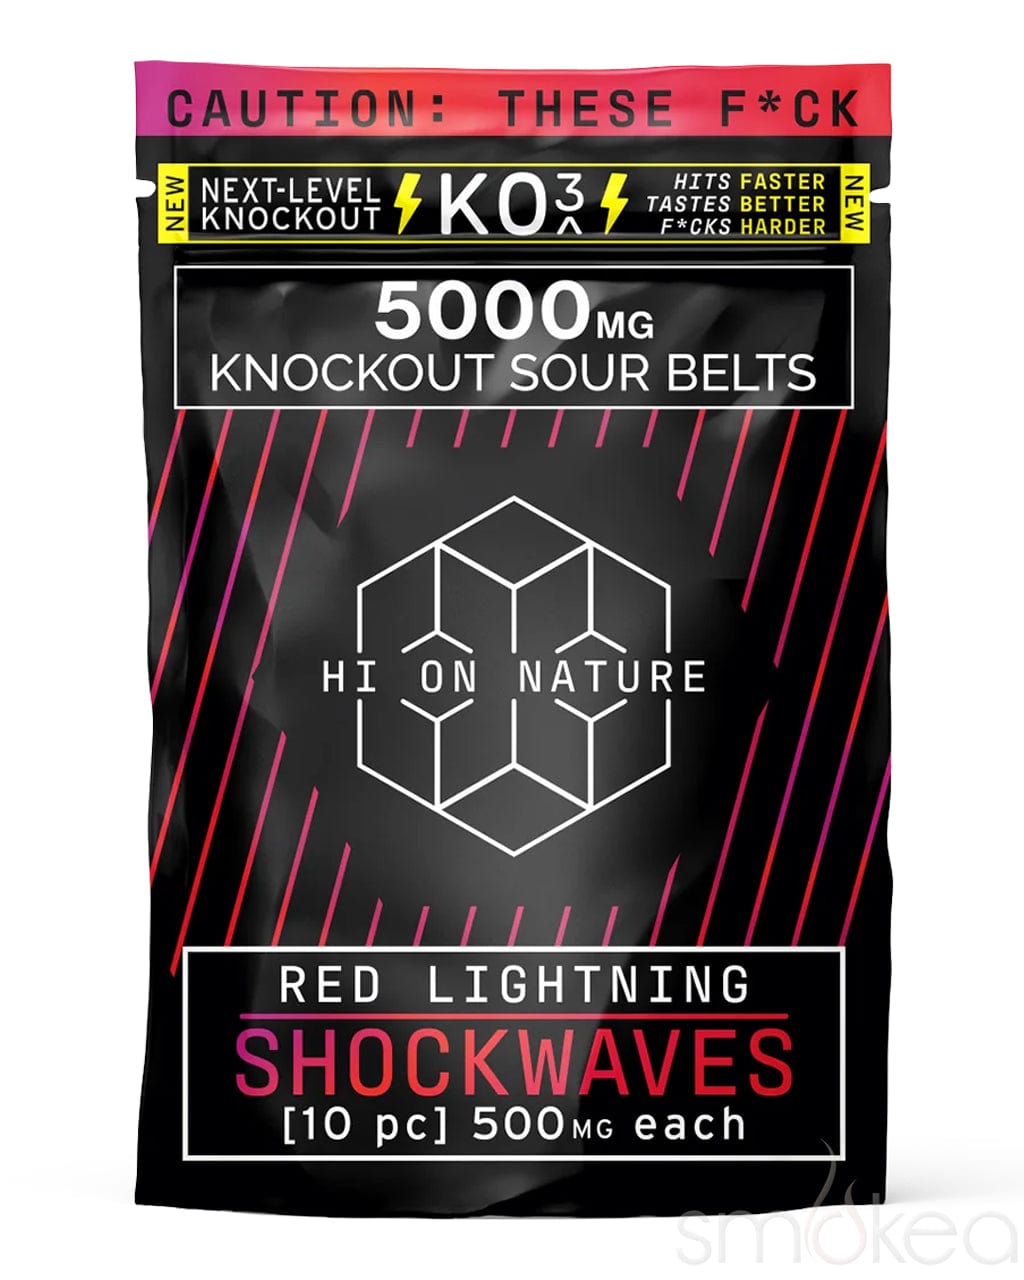 Hi On Nature 5000mg KO3 Knockout Shockwaves - Red Lightning (10-Pack)